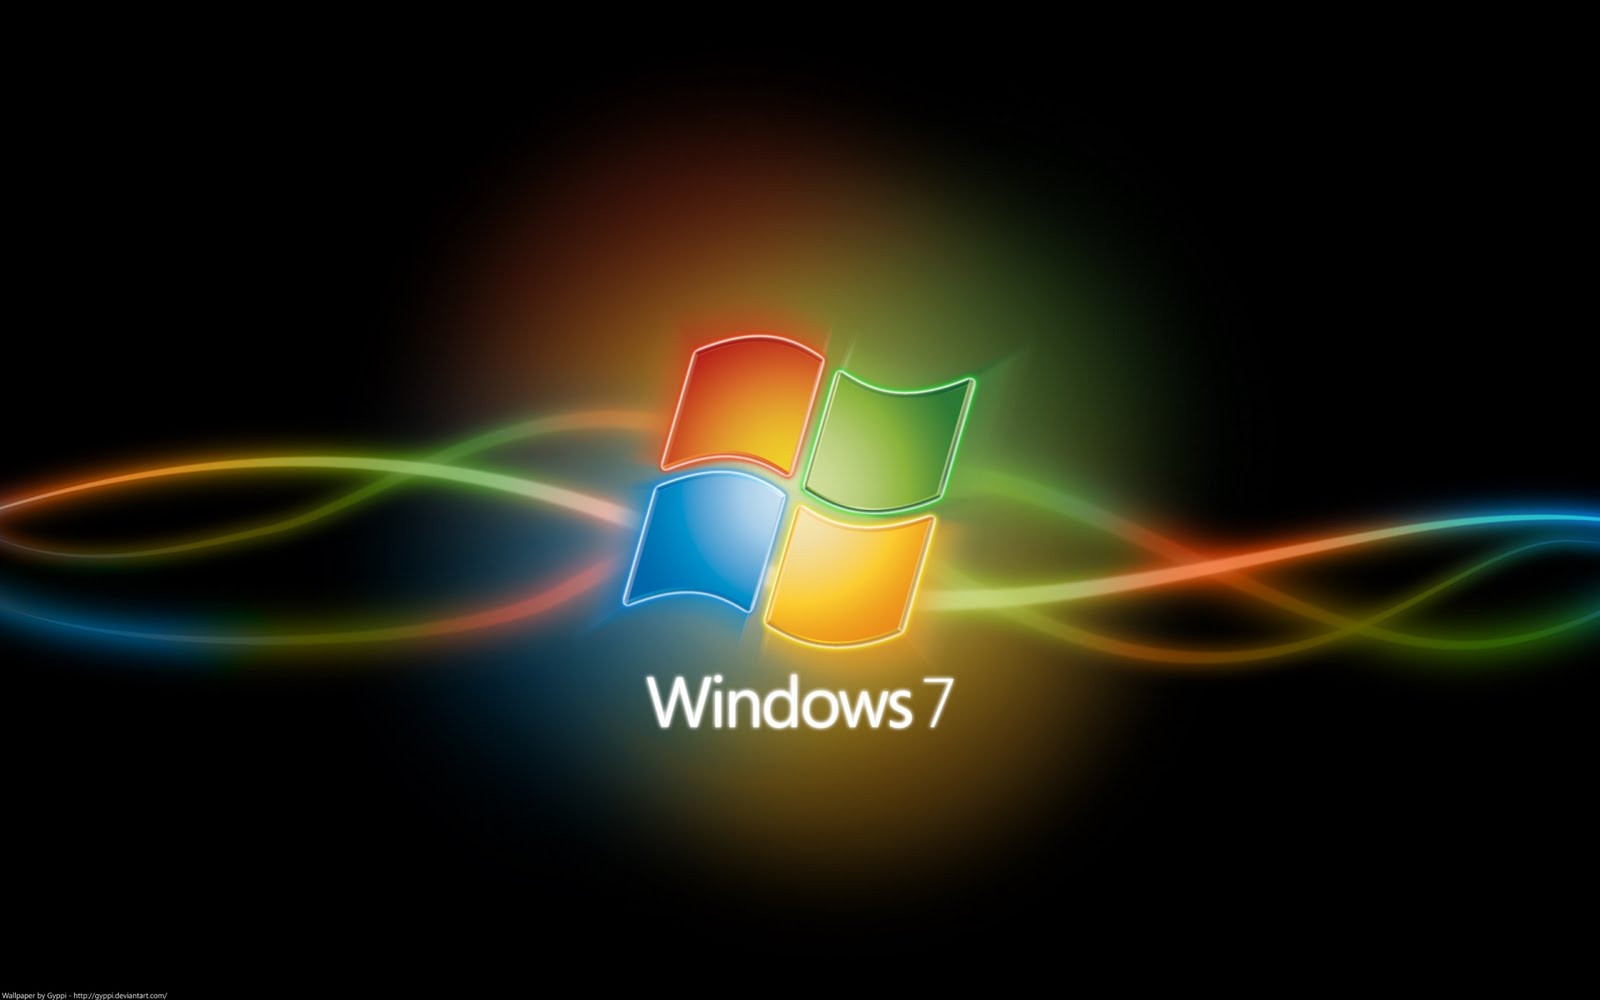 Wallpaper Windows 7 Hd 3d For Laptop Image Num 77